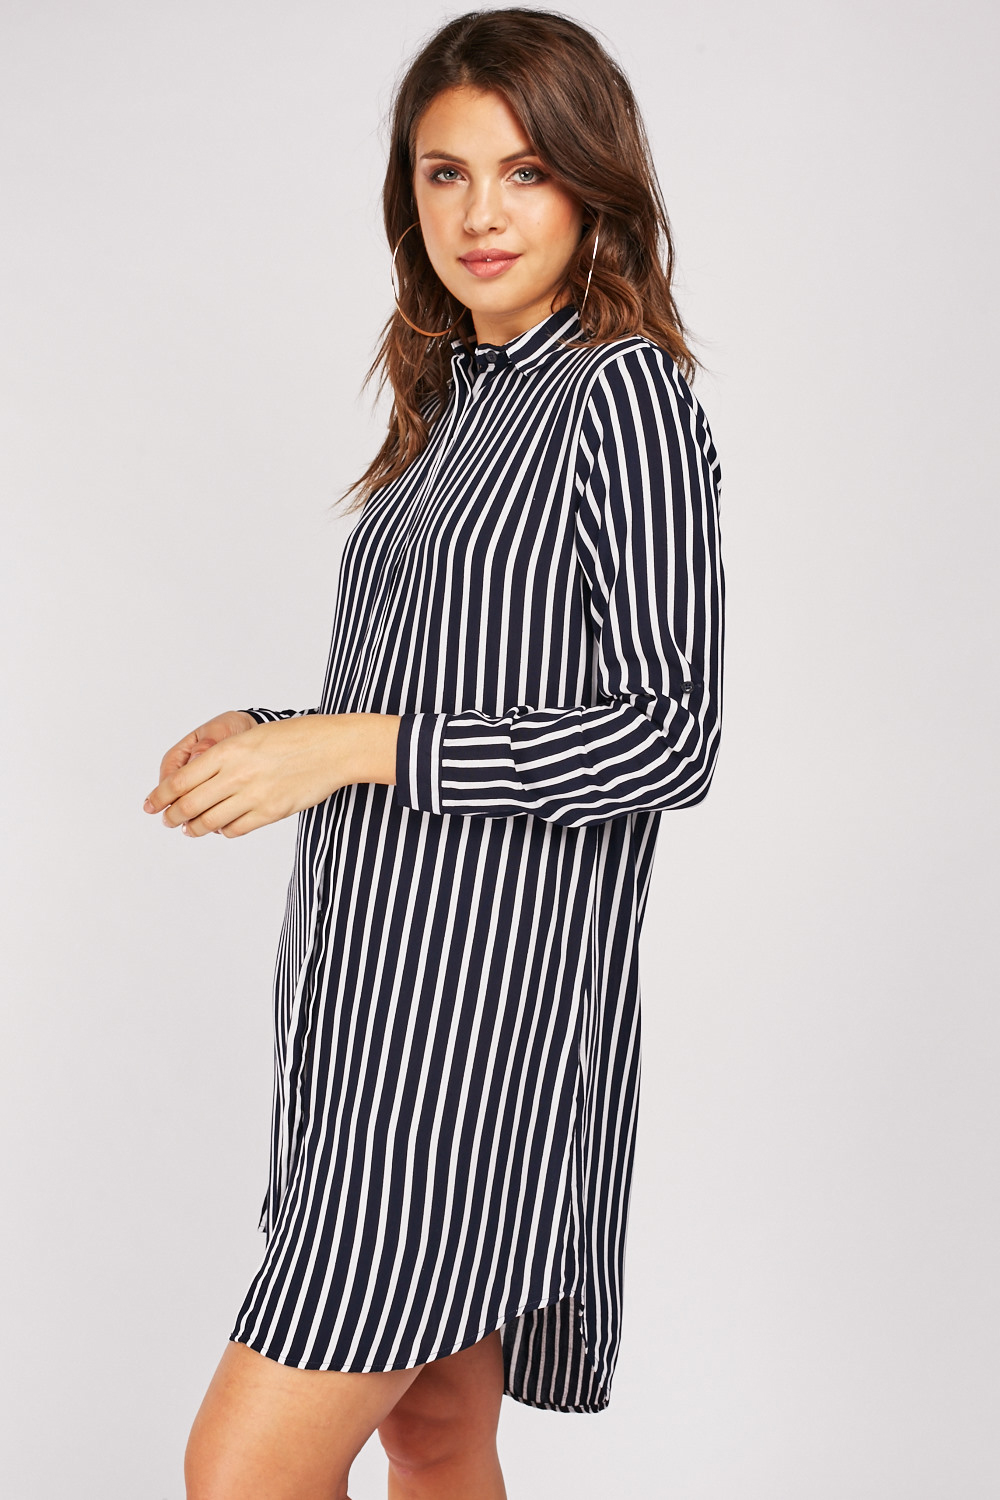 Striped Button Up Shirt Dress - Just $7